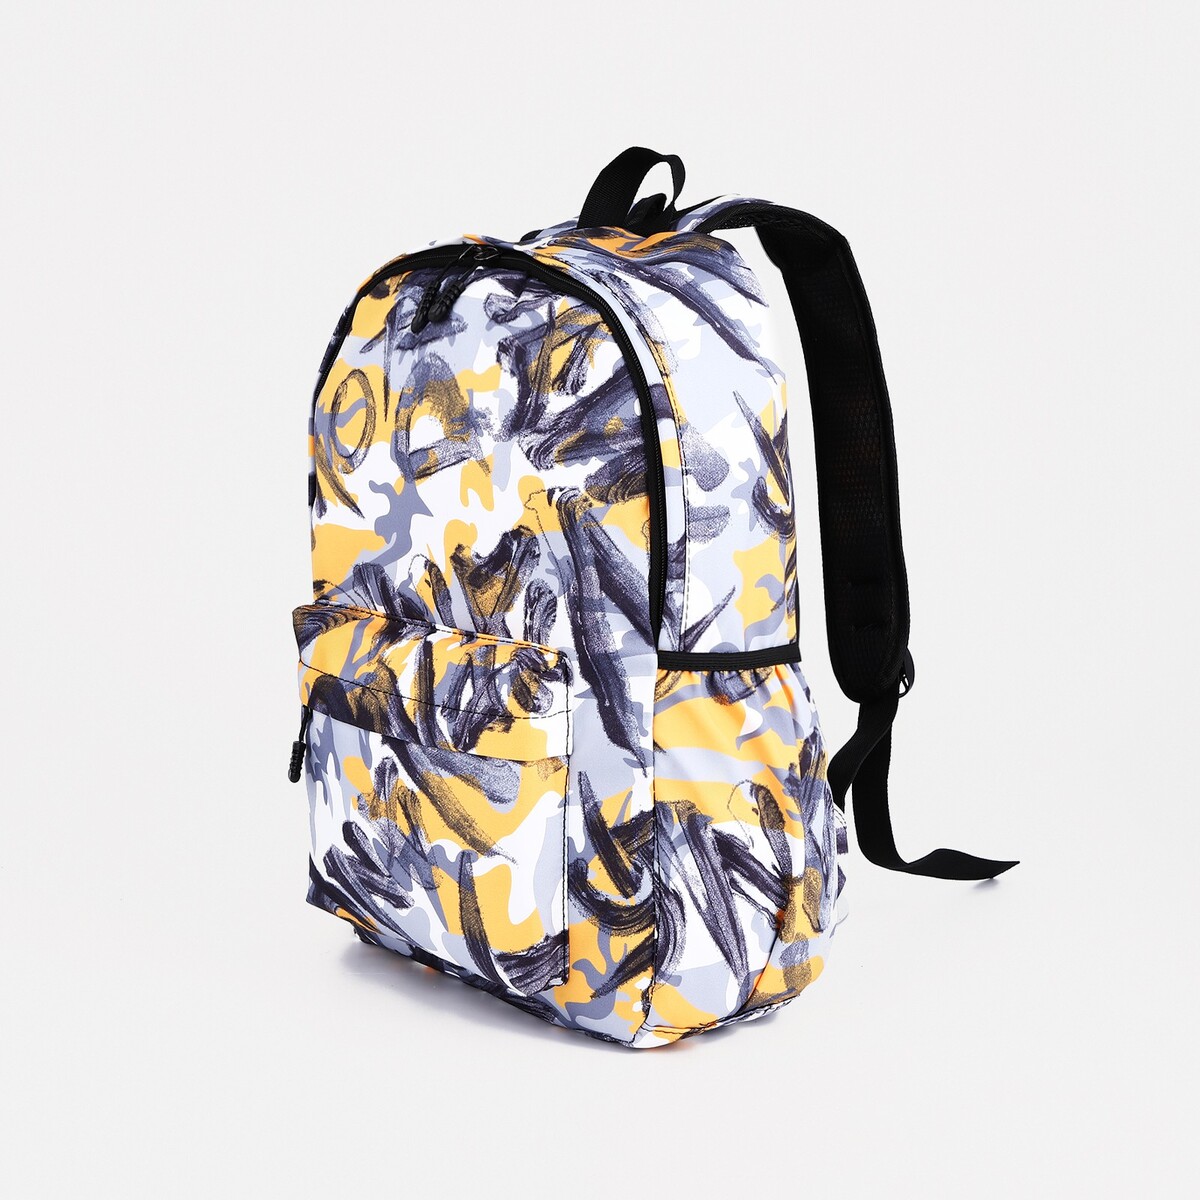 Рюкзак школьный из текстиля на молнии, 3 кармана, цвет желтый/серый рюкзак сумка на молнии 10188998 3 кармана отдел для ноутбука серый